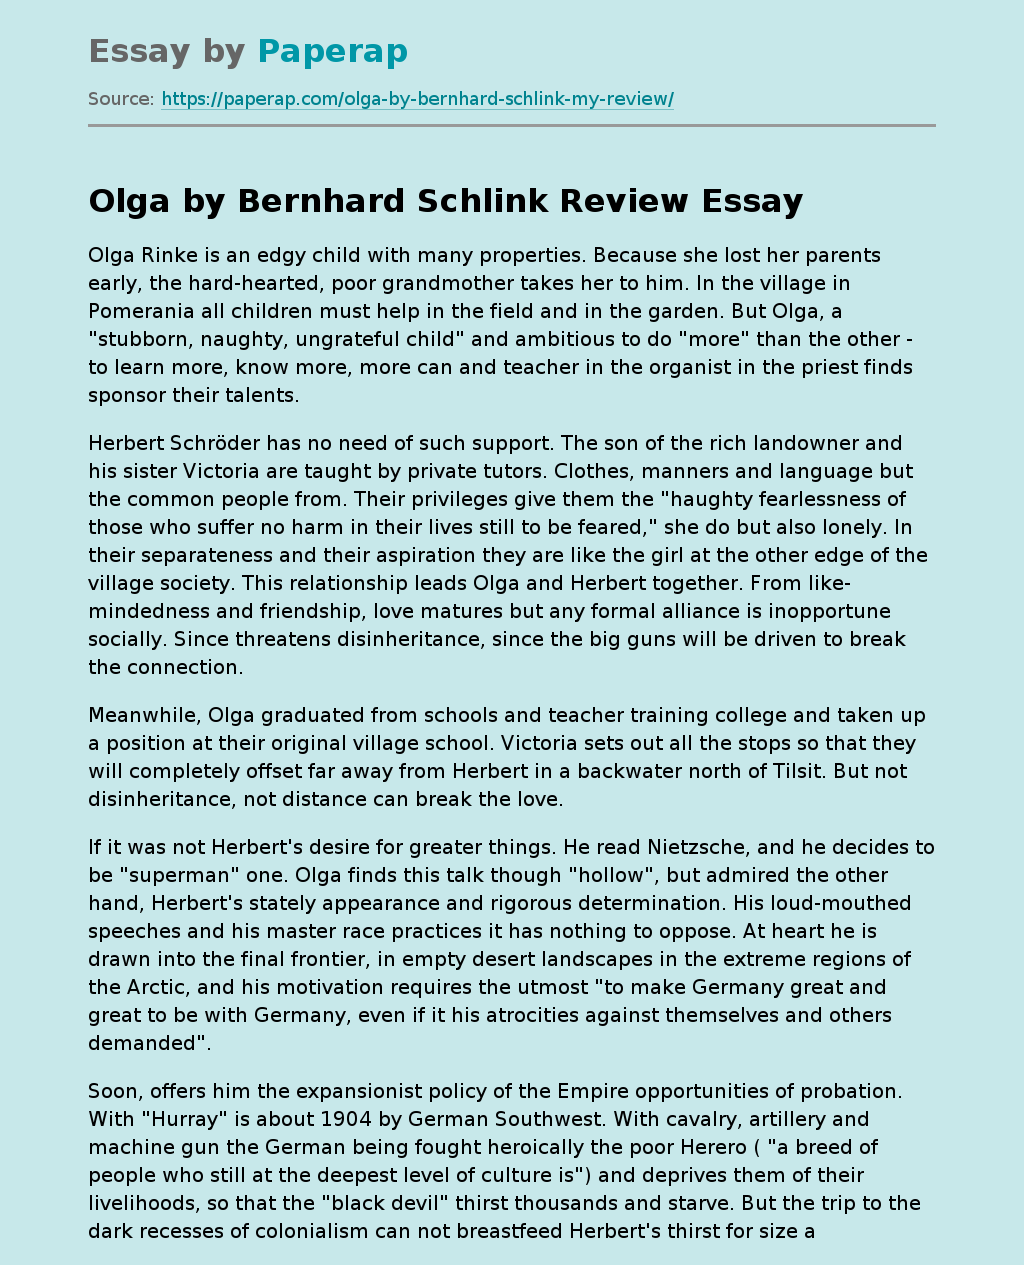 New Novel by Bernhard Schlink “Olga”